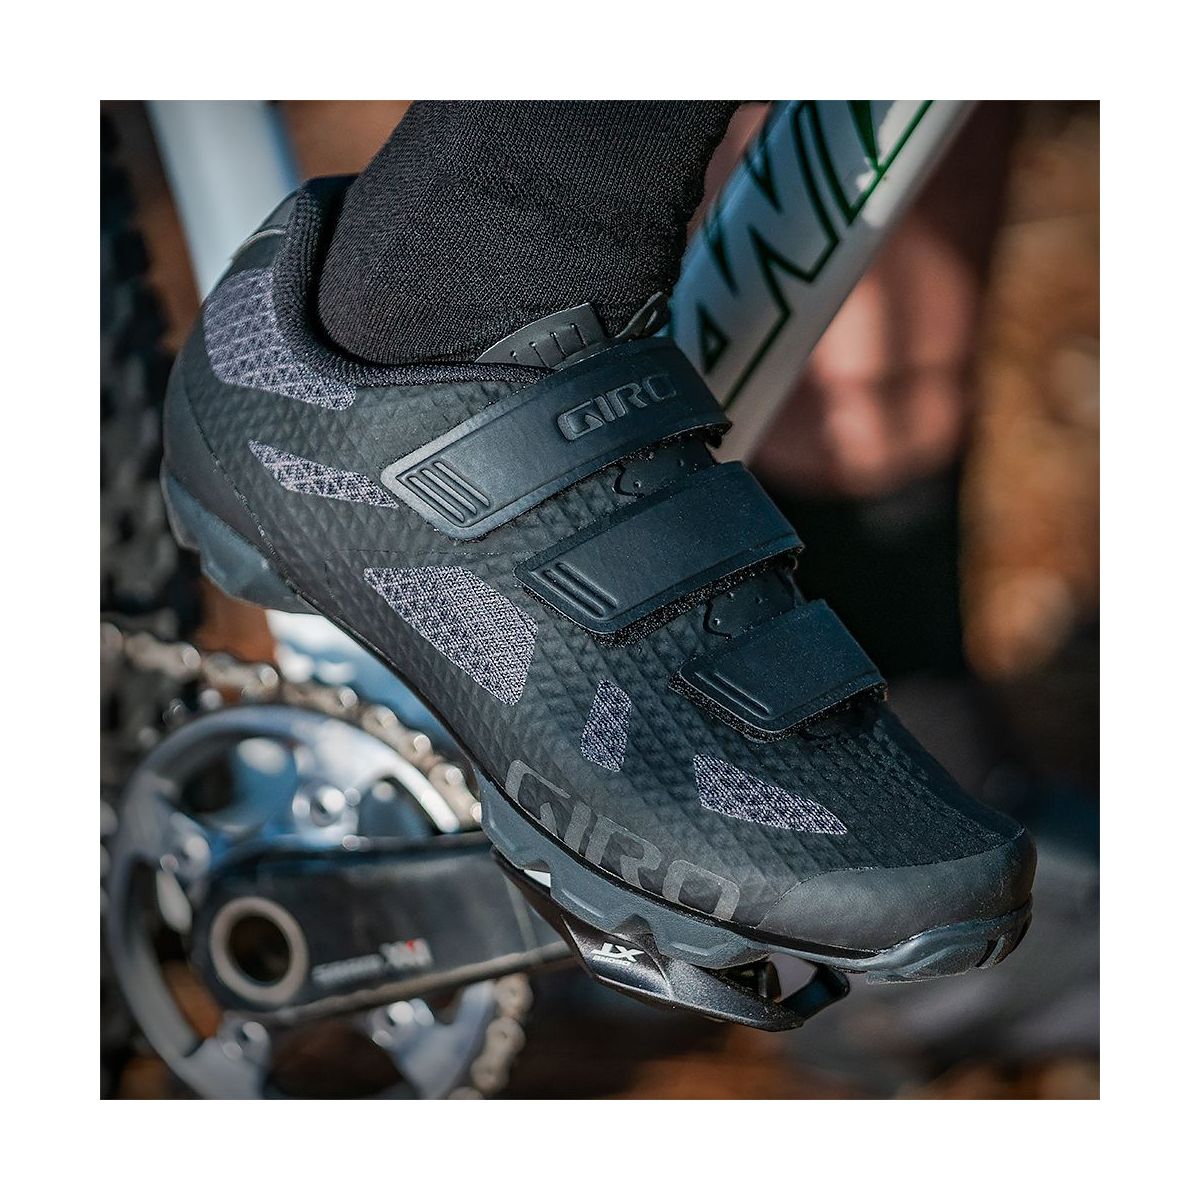 Zapatillas para pedal automático Giro Ranger mujer